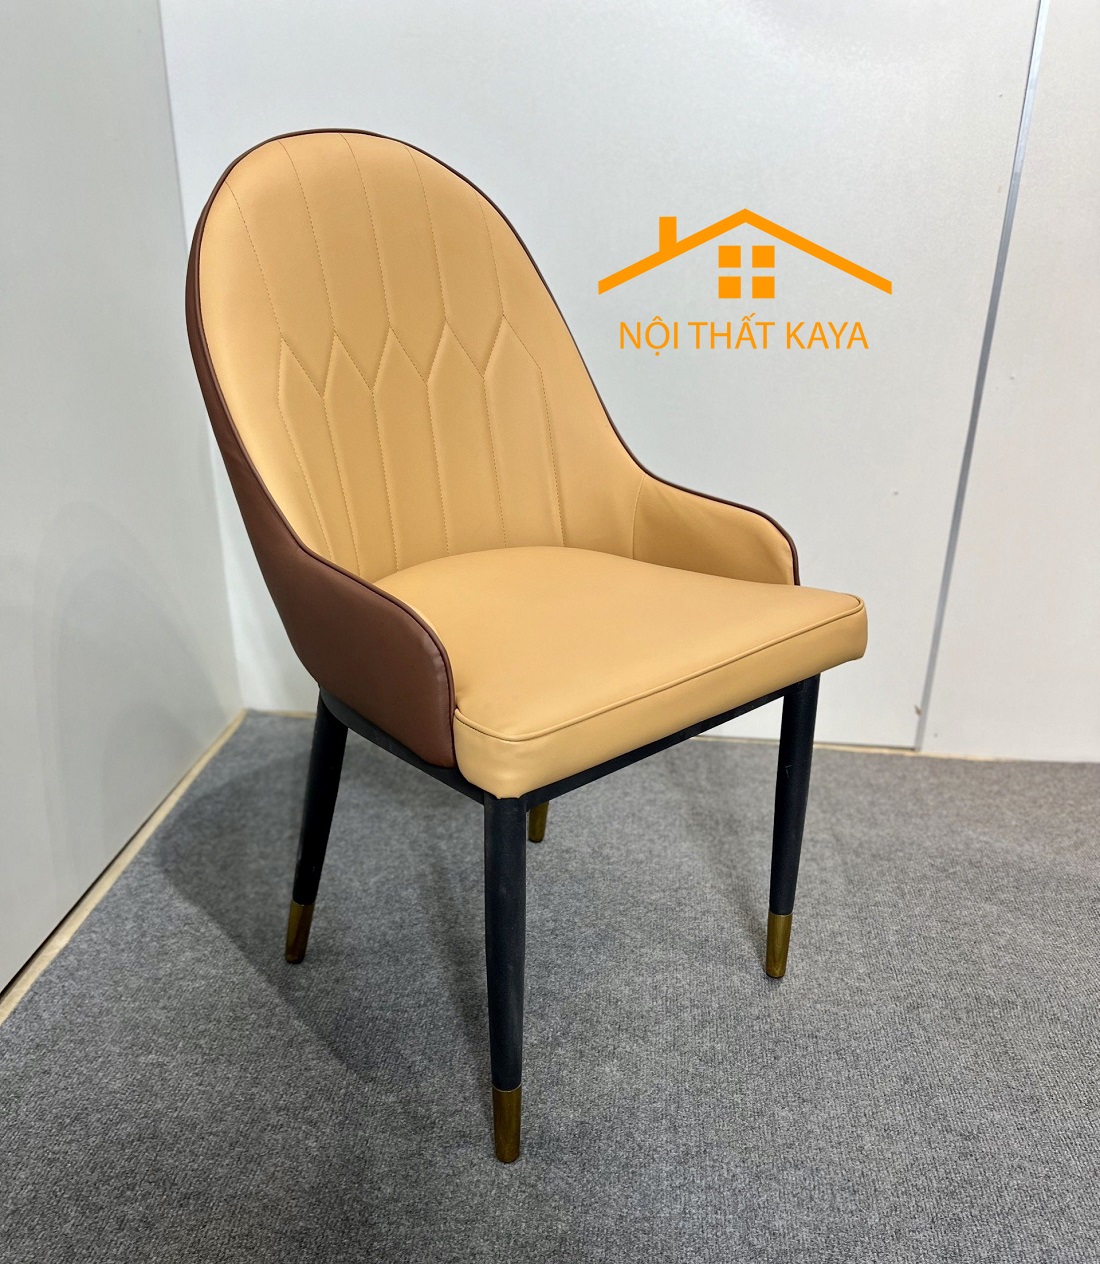 Ghế Hera Tay Nhập Khẩu Bọc Da Microfiber Cao Cấp - Khung và chân ghế bằng Thép Carbon sơn tĩnh điện chống rỉ sét KY-GH18S